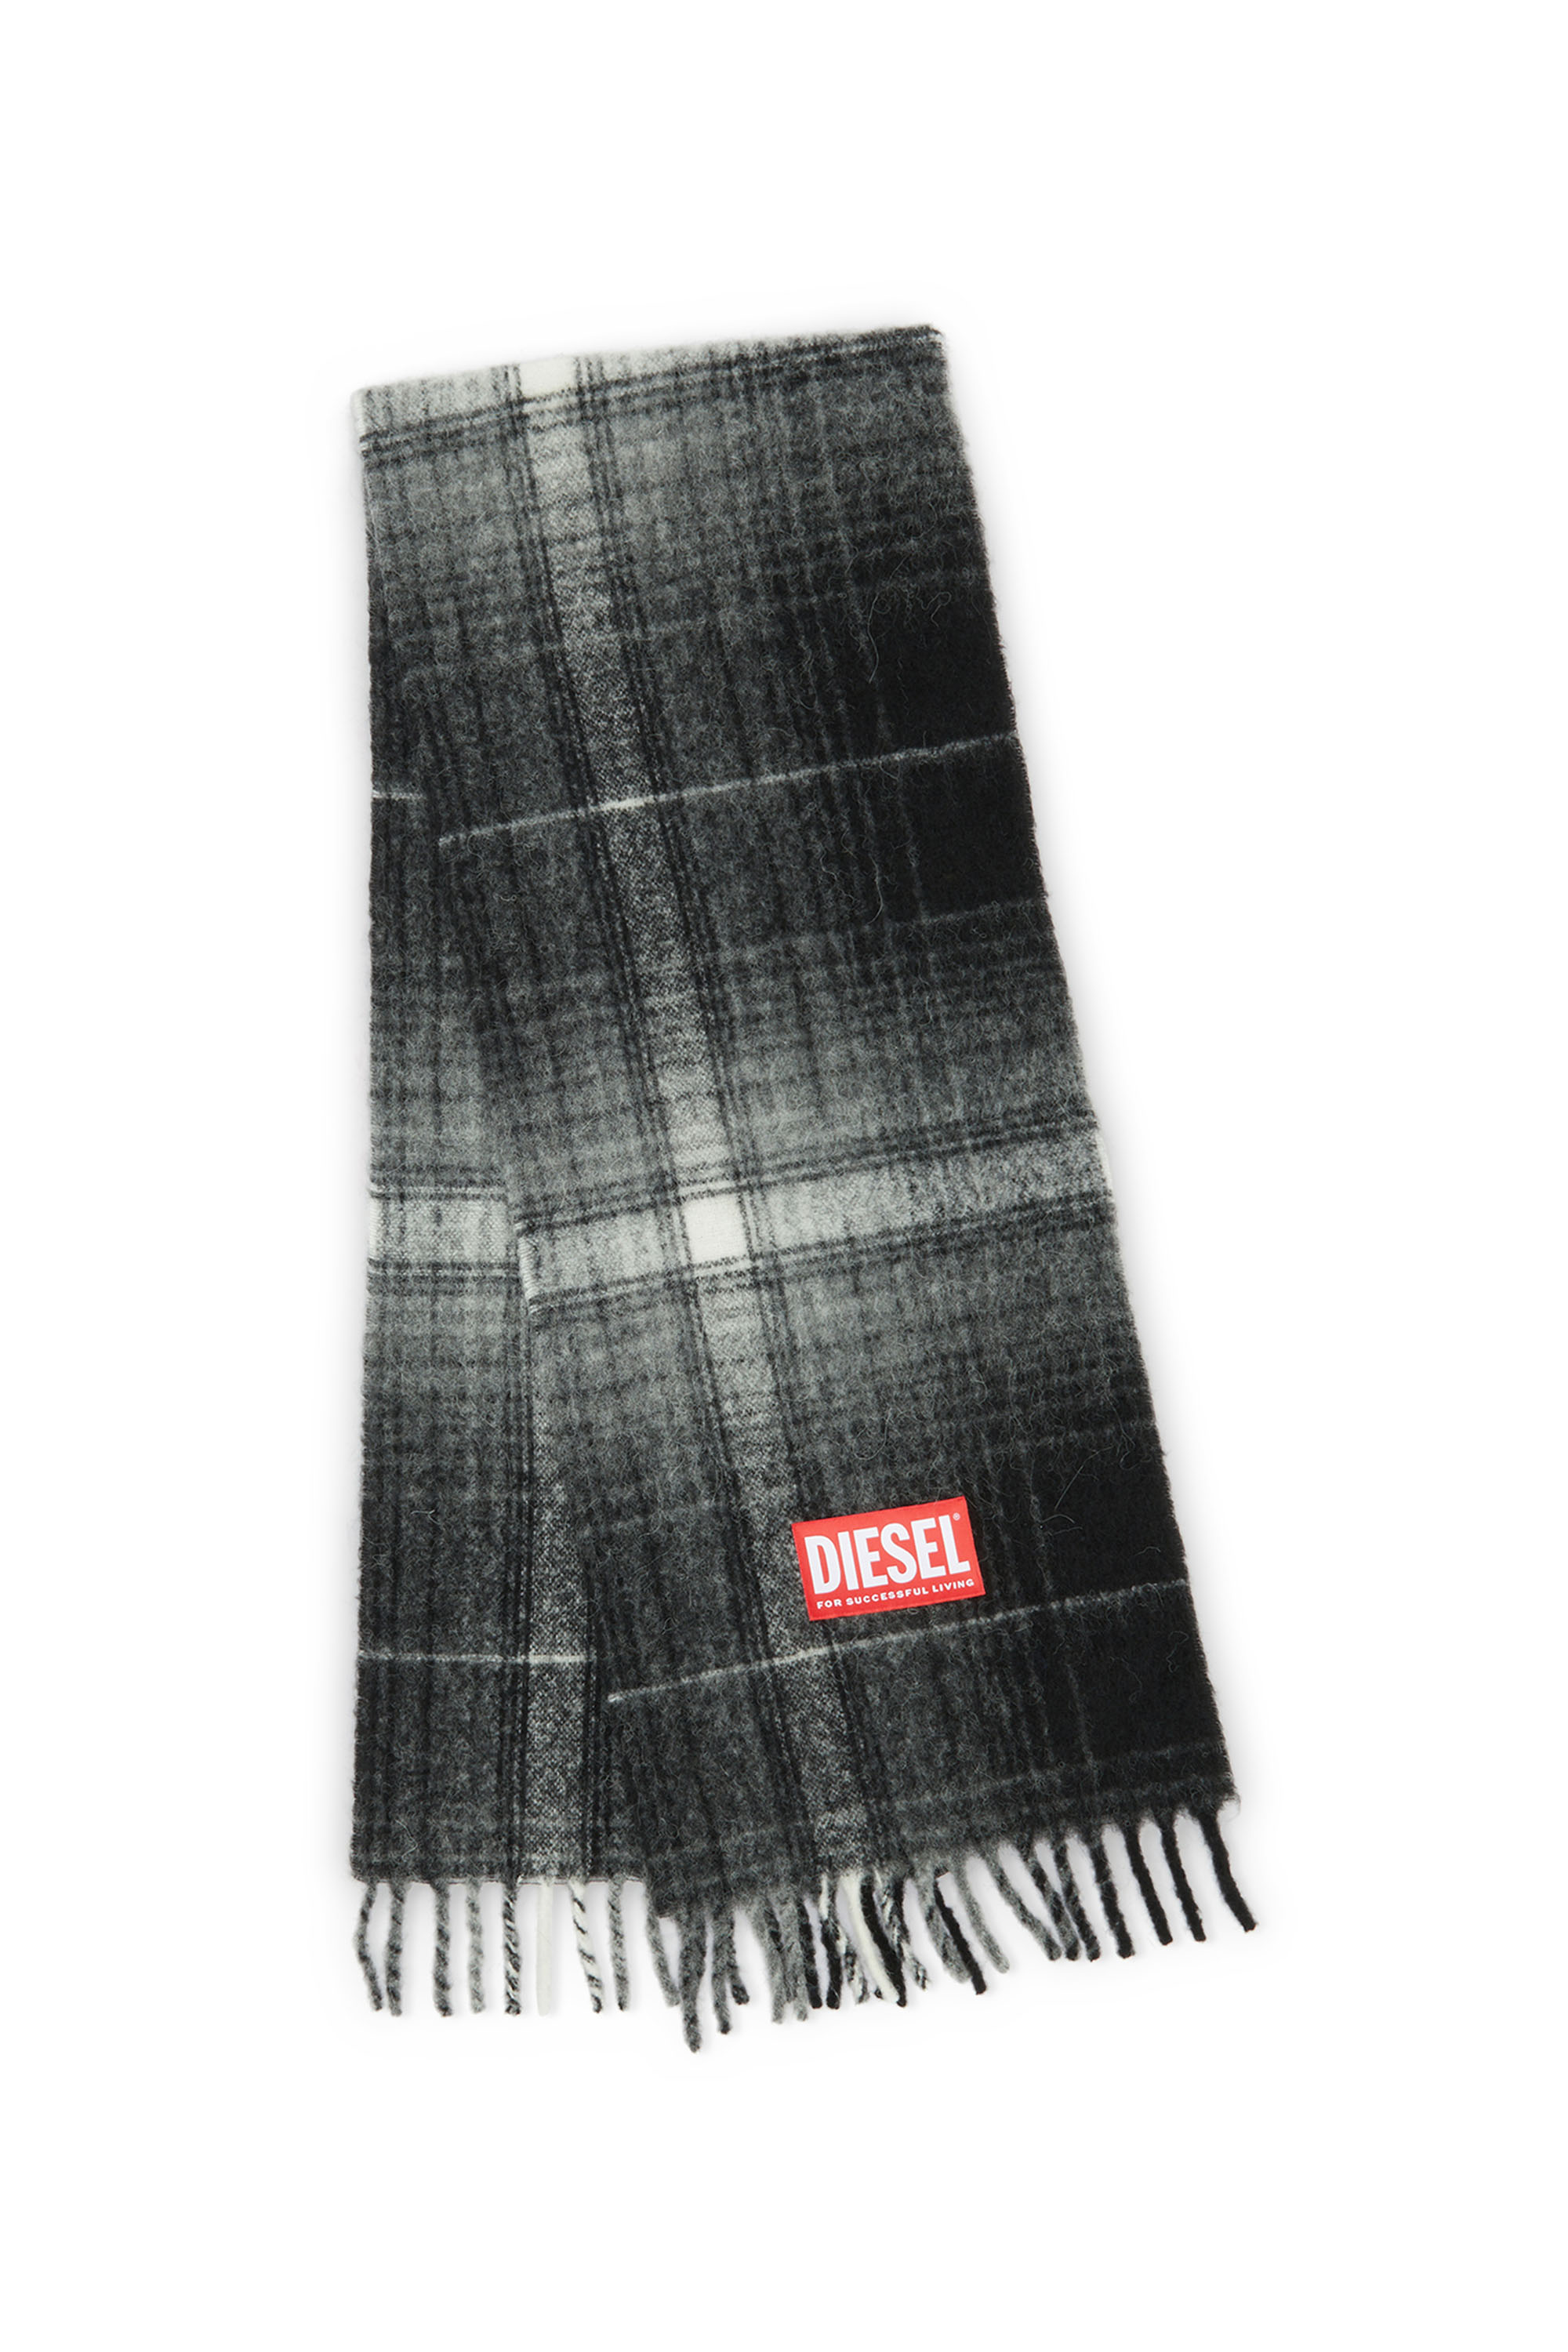 Diesel - S-BESTRO, Man Checked scarf in wool and alpaca in Black - Image 3